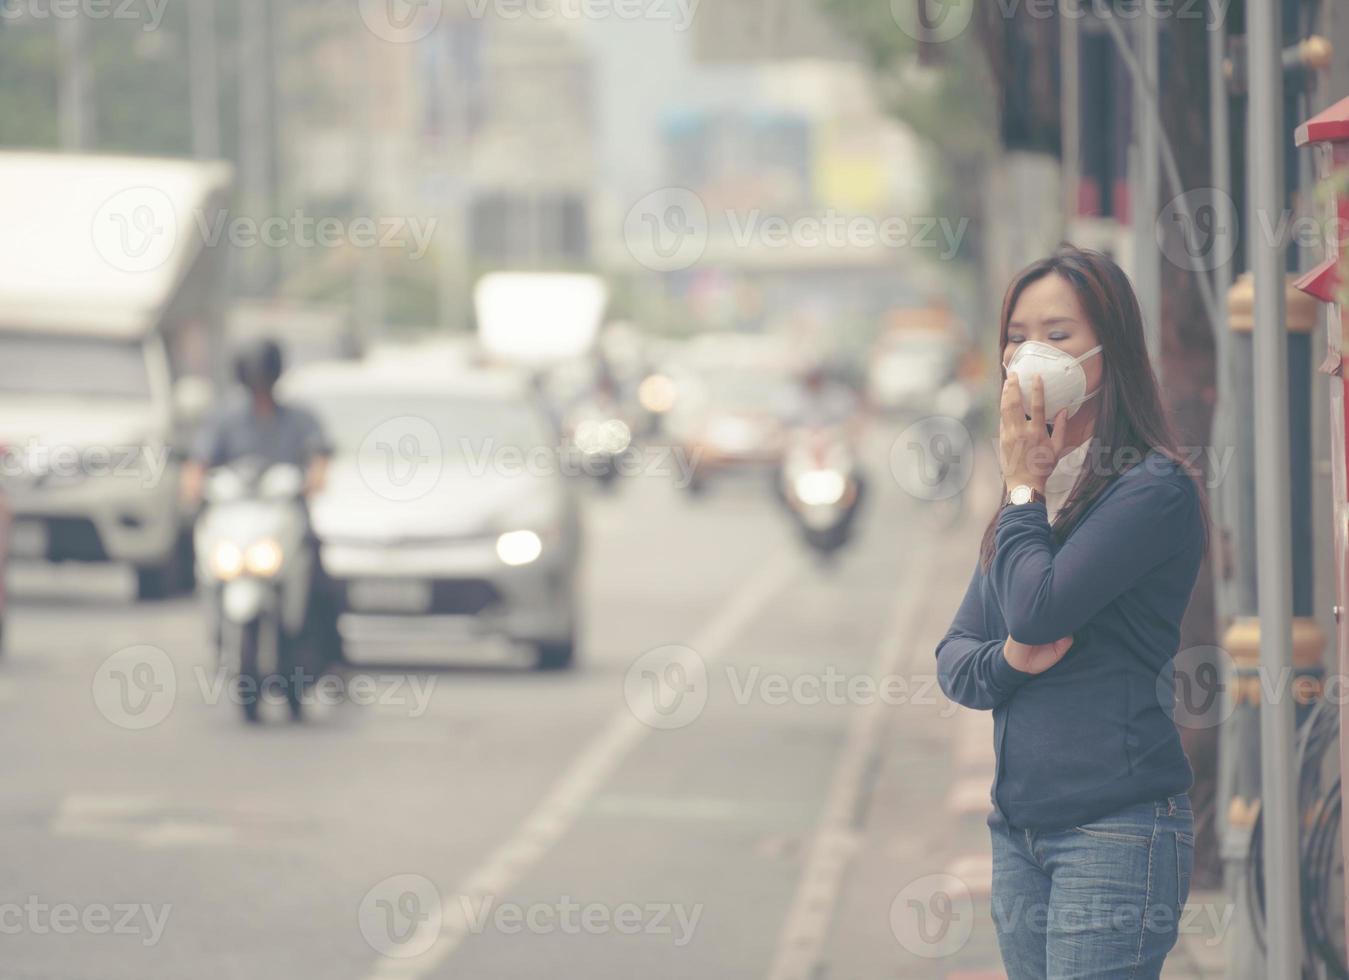 donna che indossa una maschera protettiva nella strada della città foto